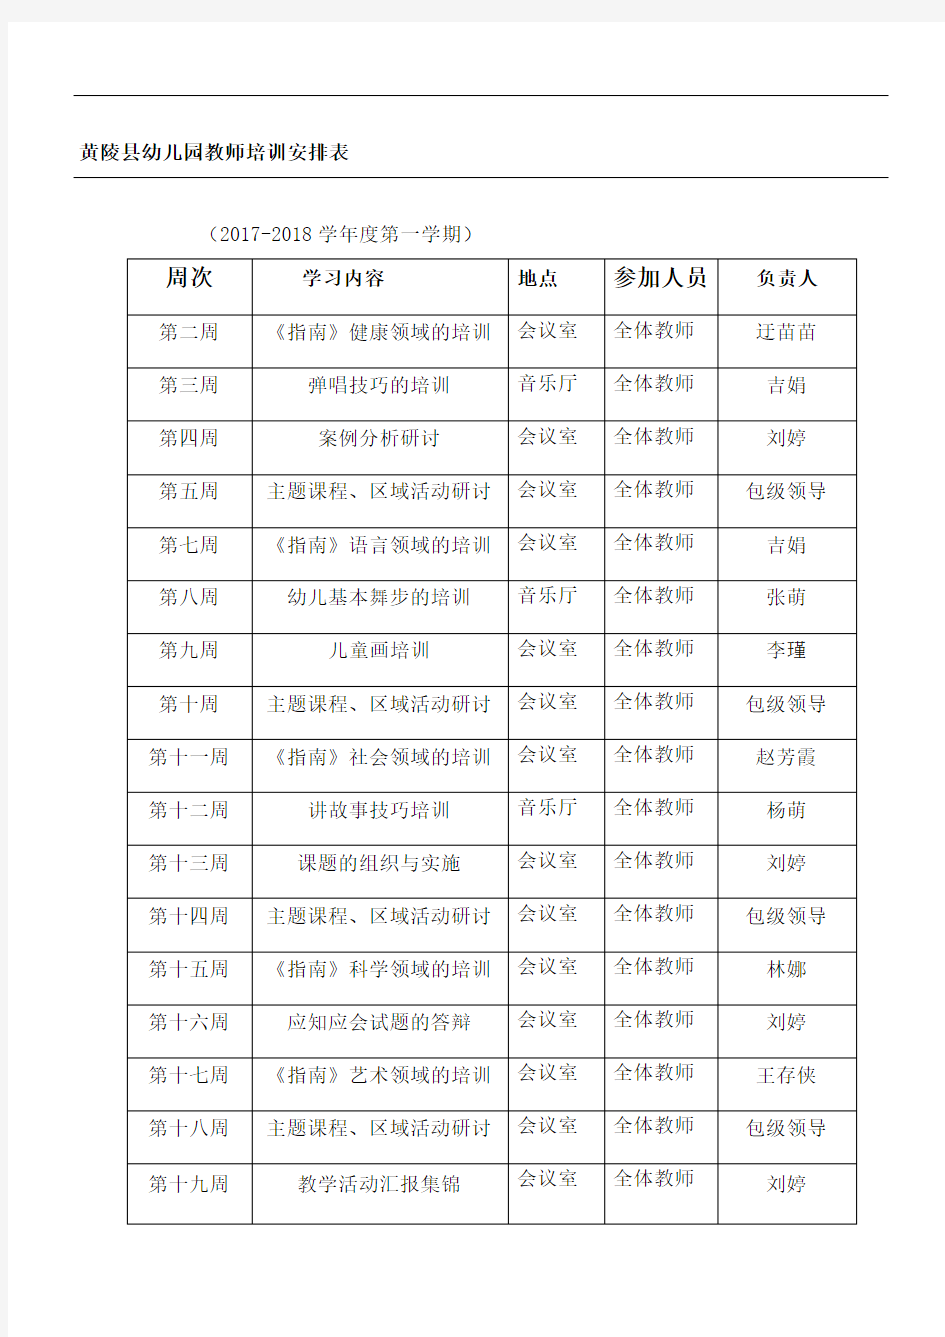 黄陵县幼儿园教师培训安排表